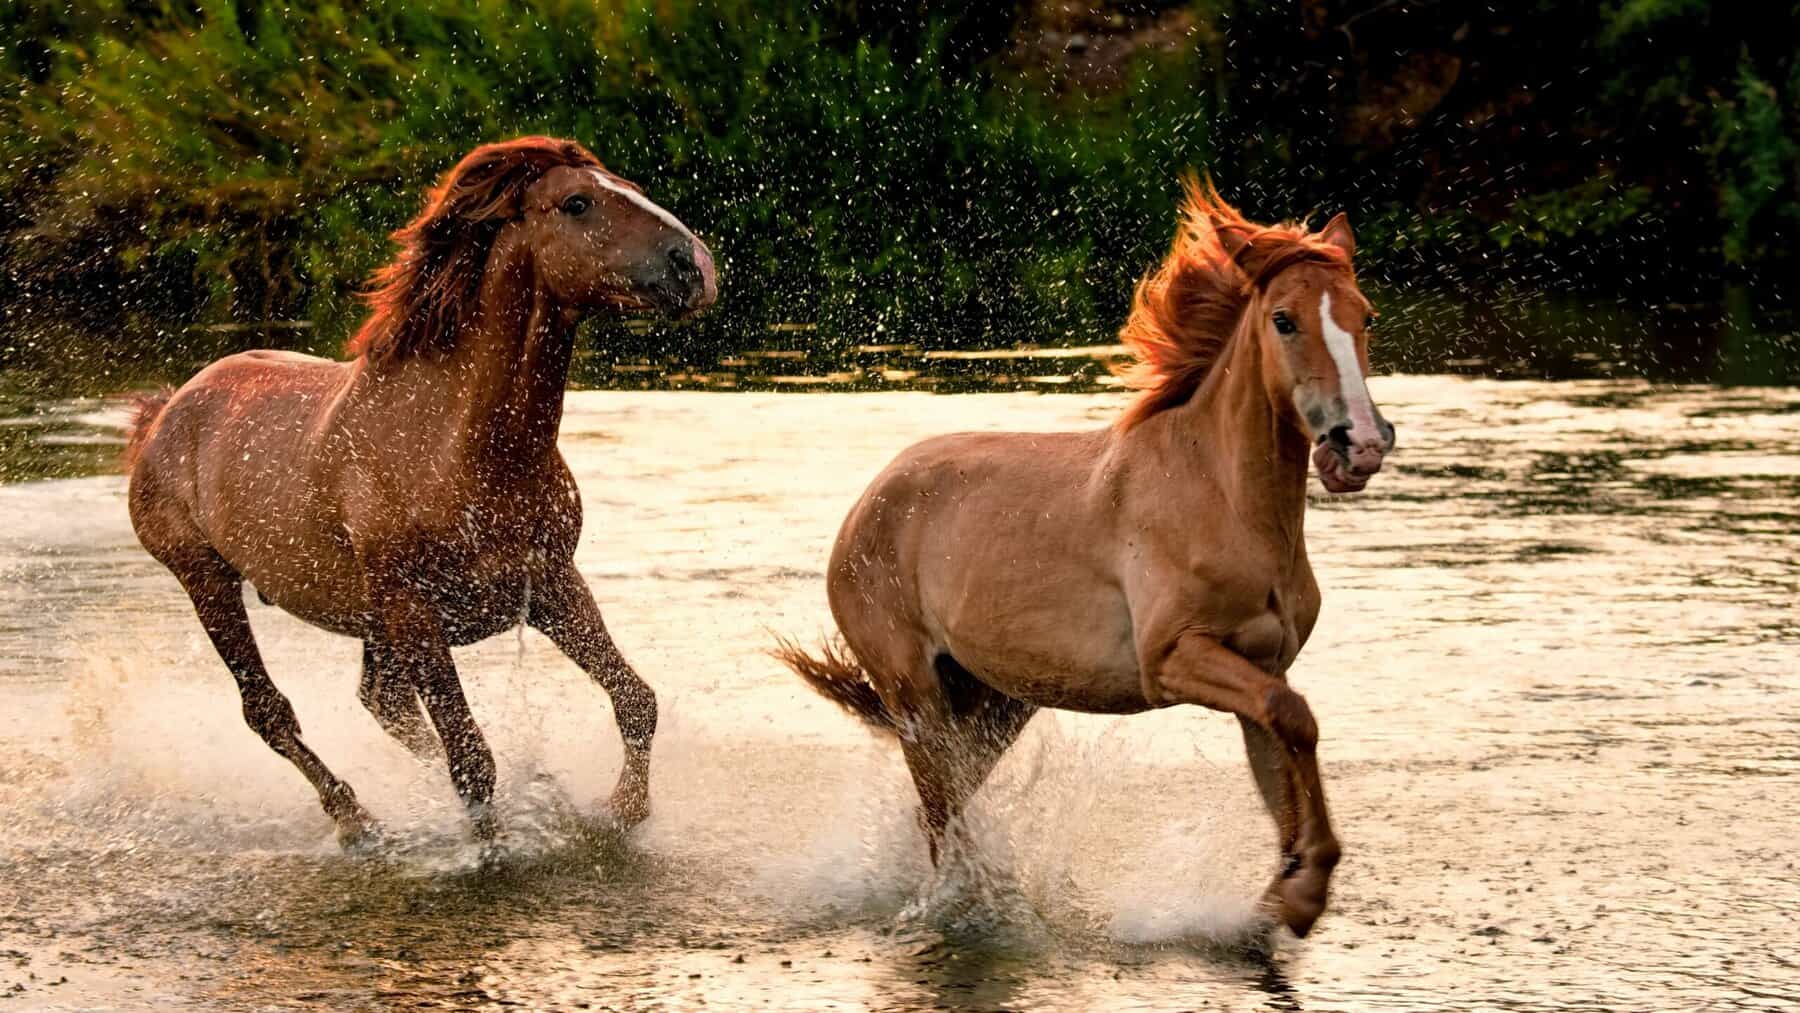 wild-horses-of-the-salt-river-apache-junction-az-2022-08-01-03-08-57-utc